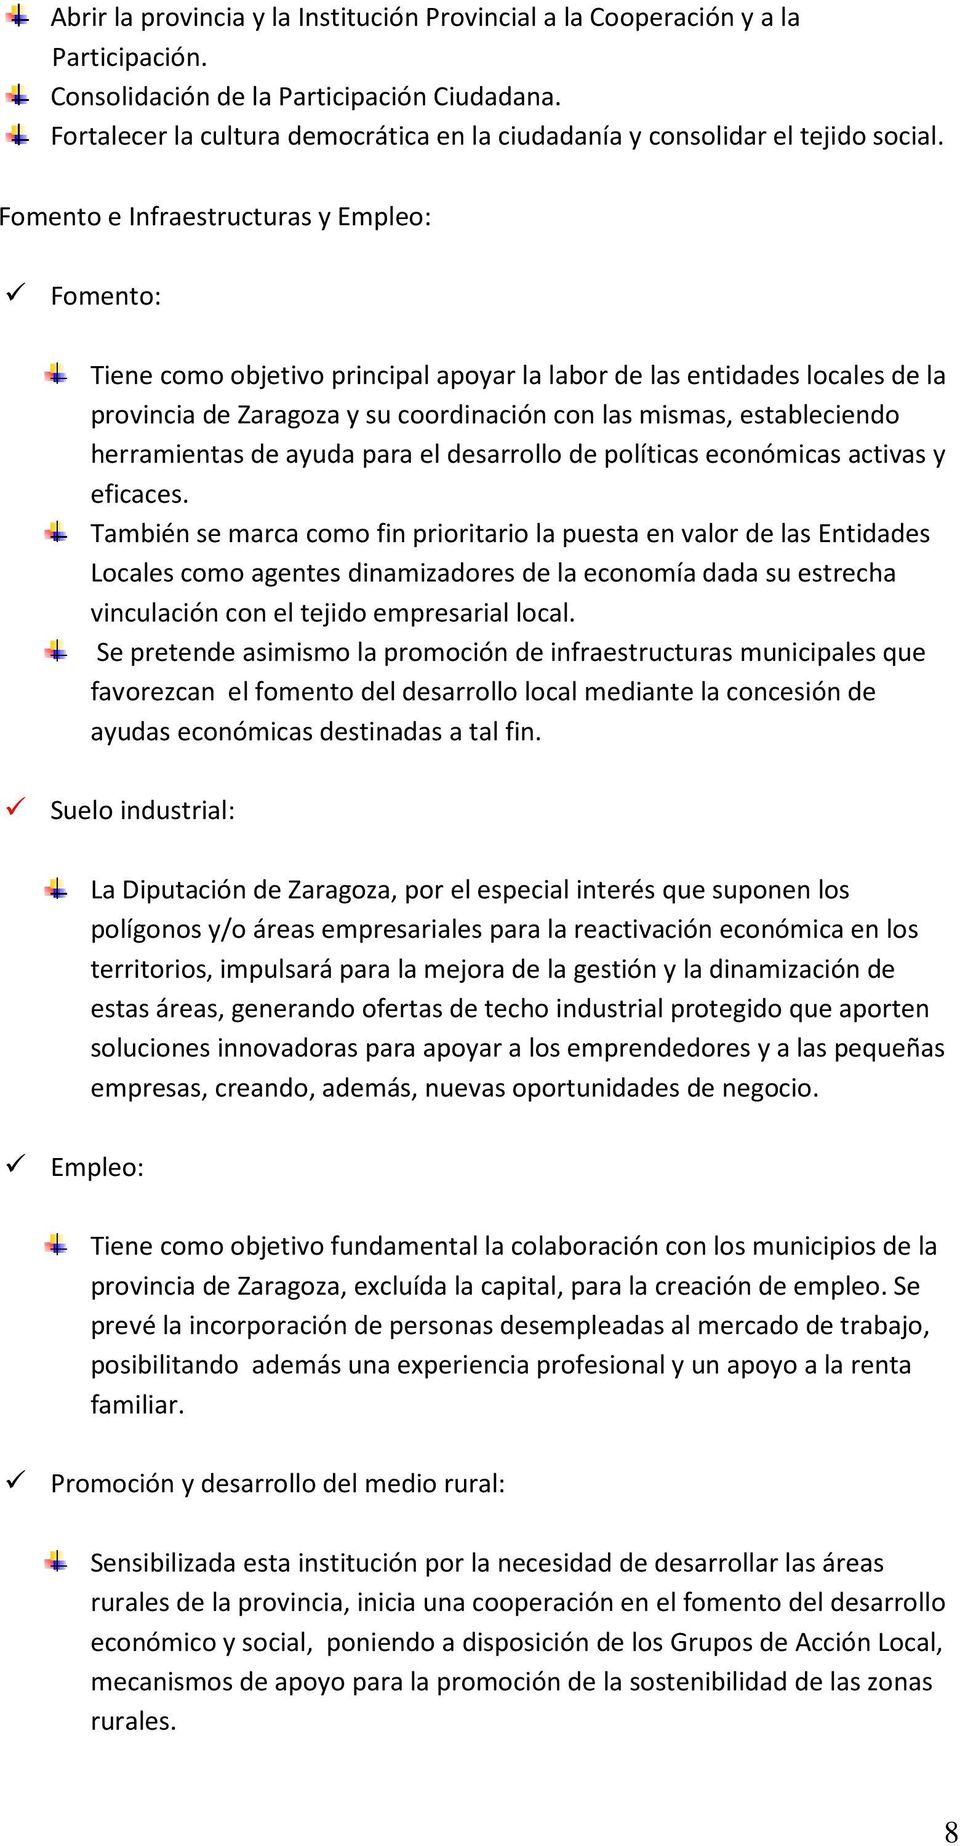 Fomento e Infraestructuras y Empleo: Fomento: Tiene como objetivo principal apoyar la labor de las entidades locales de la provincia de Zaragoza y su coordinación con las mismas, estableciendo